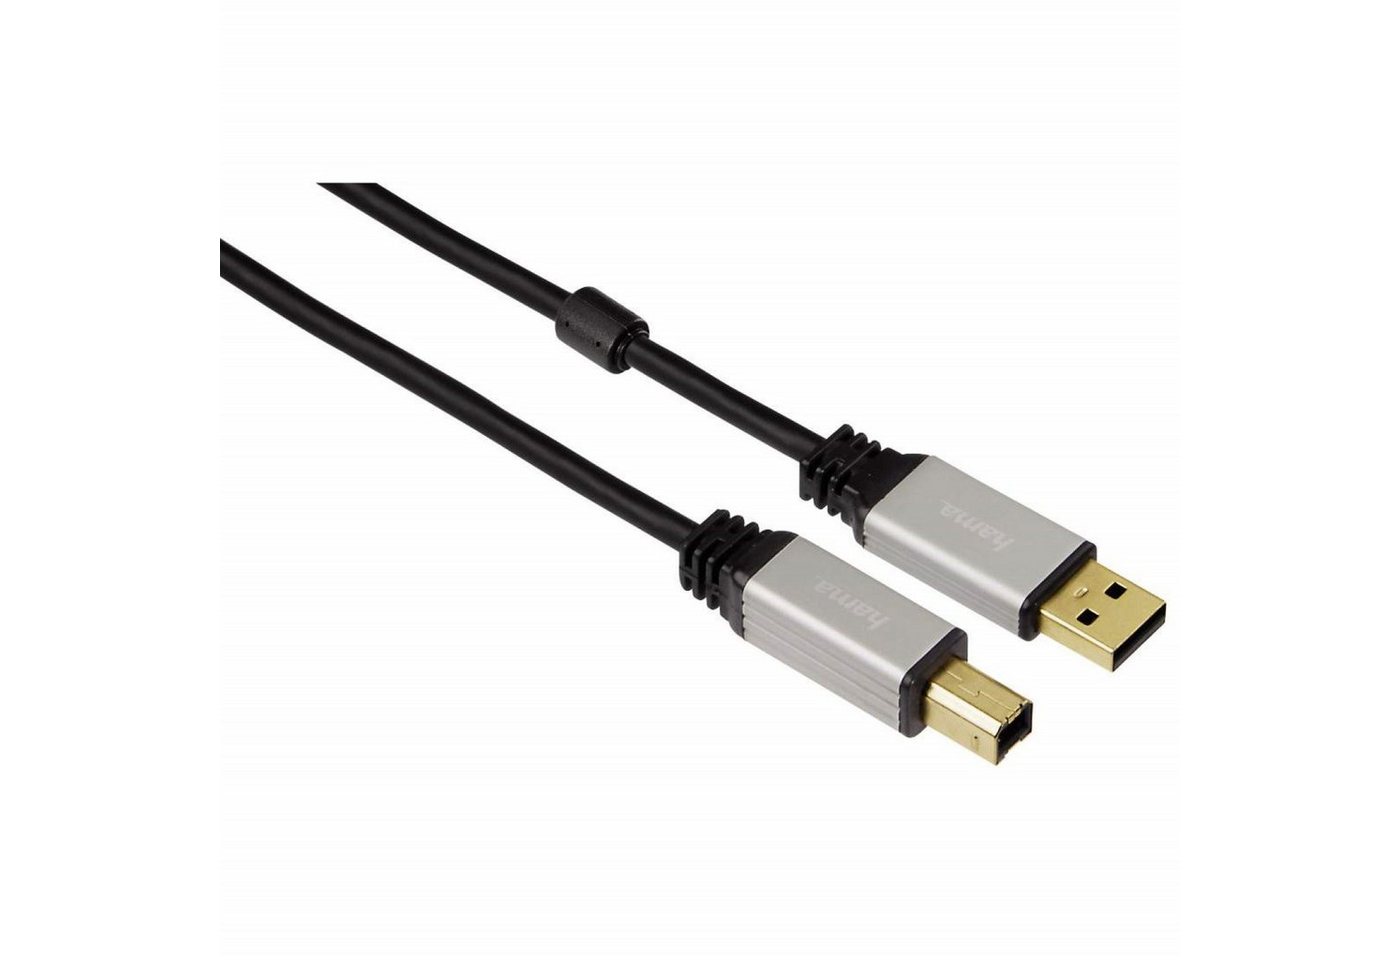 Hama HQ USB-Kabel Anschlusskabel USB 2.0 vergoldet USB-Kabel, USB Typ A,USB Typ A, Keine (180 cm), USB 2.0, Metall-Stecker, doppelt geschirmt, für PC, Hub, Drucker etc. von Hama